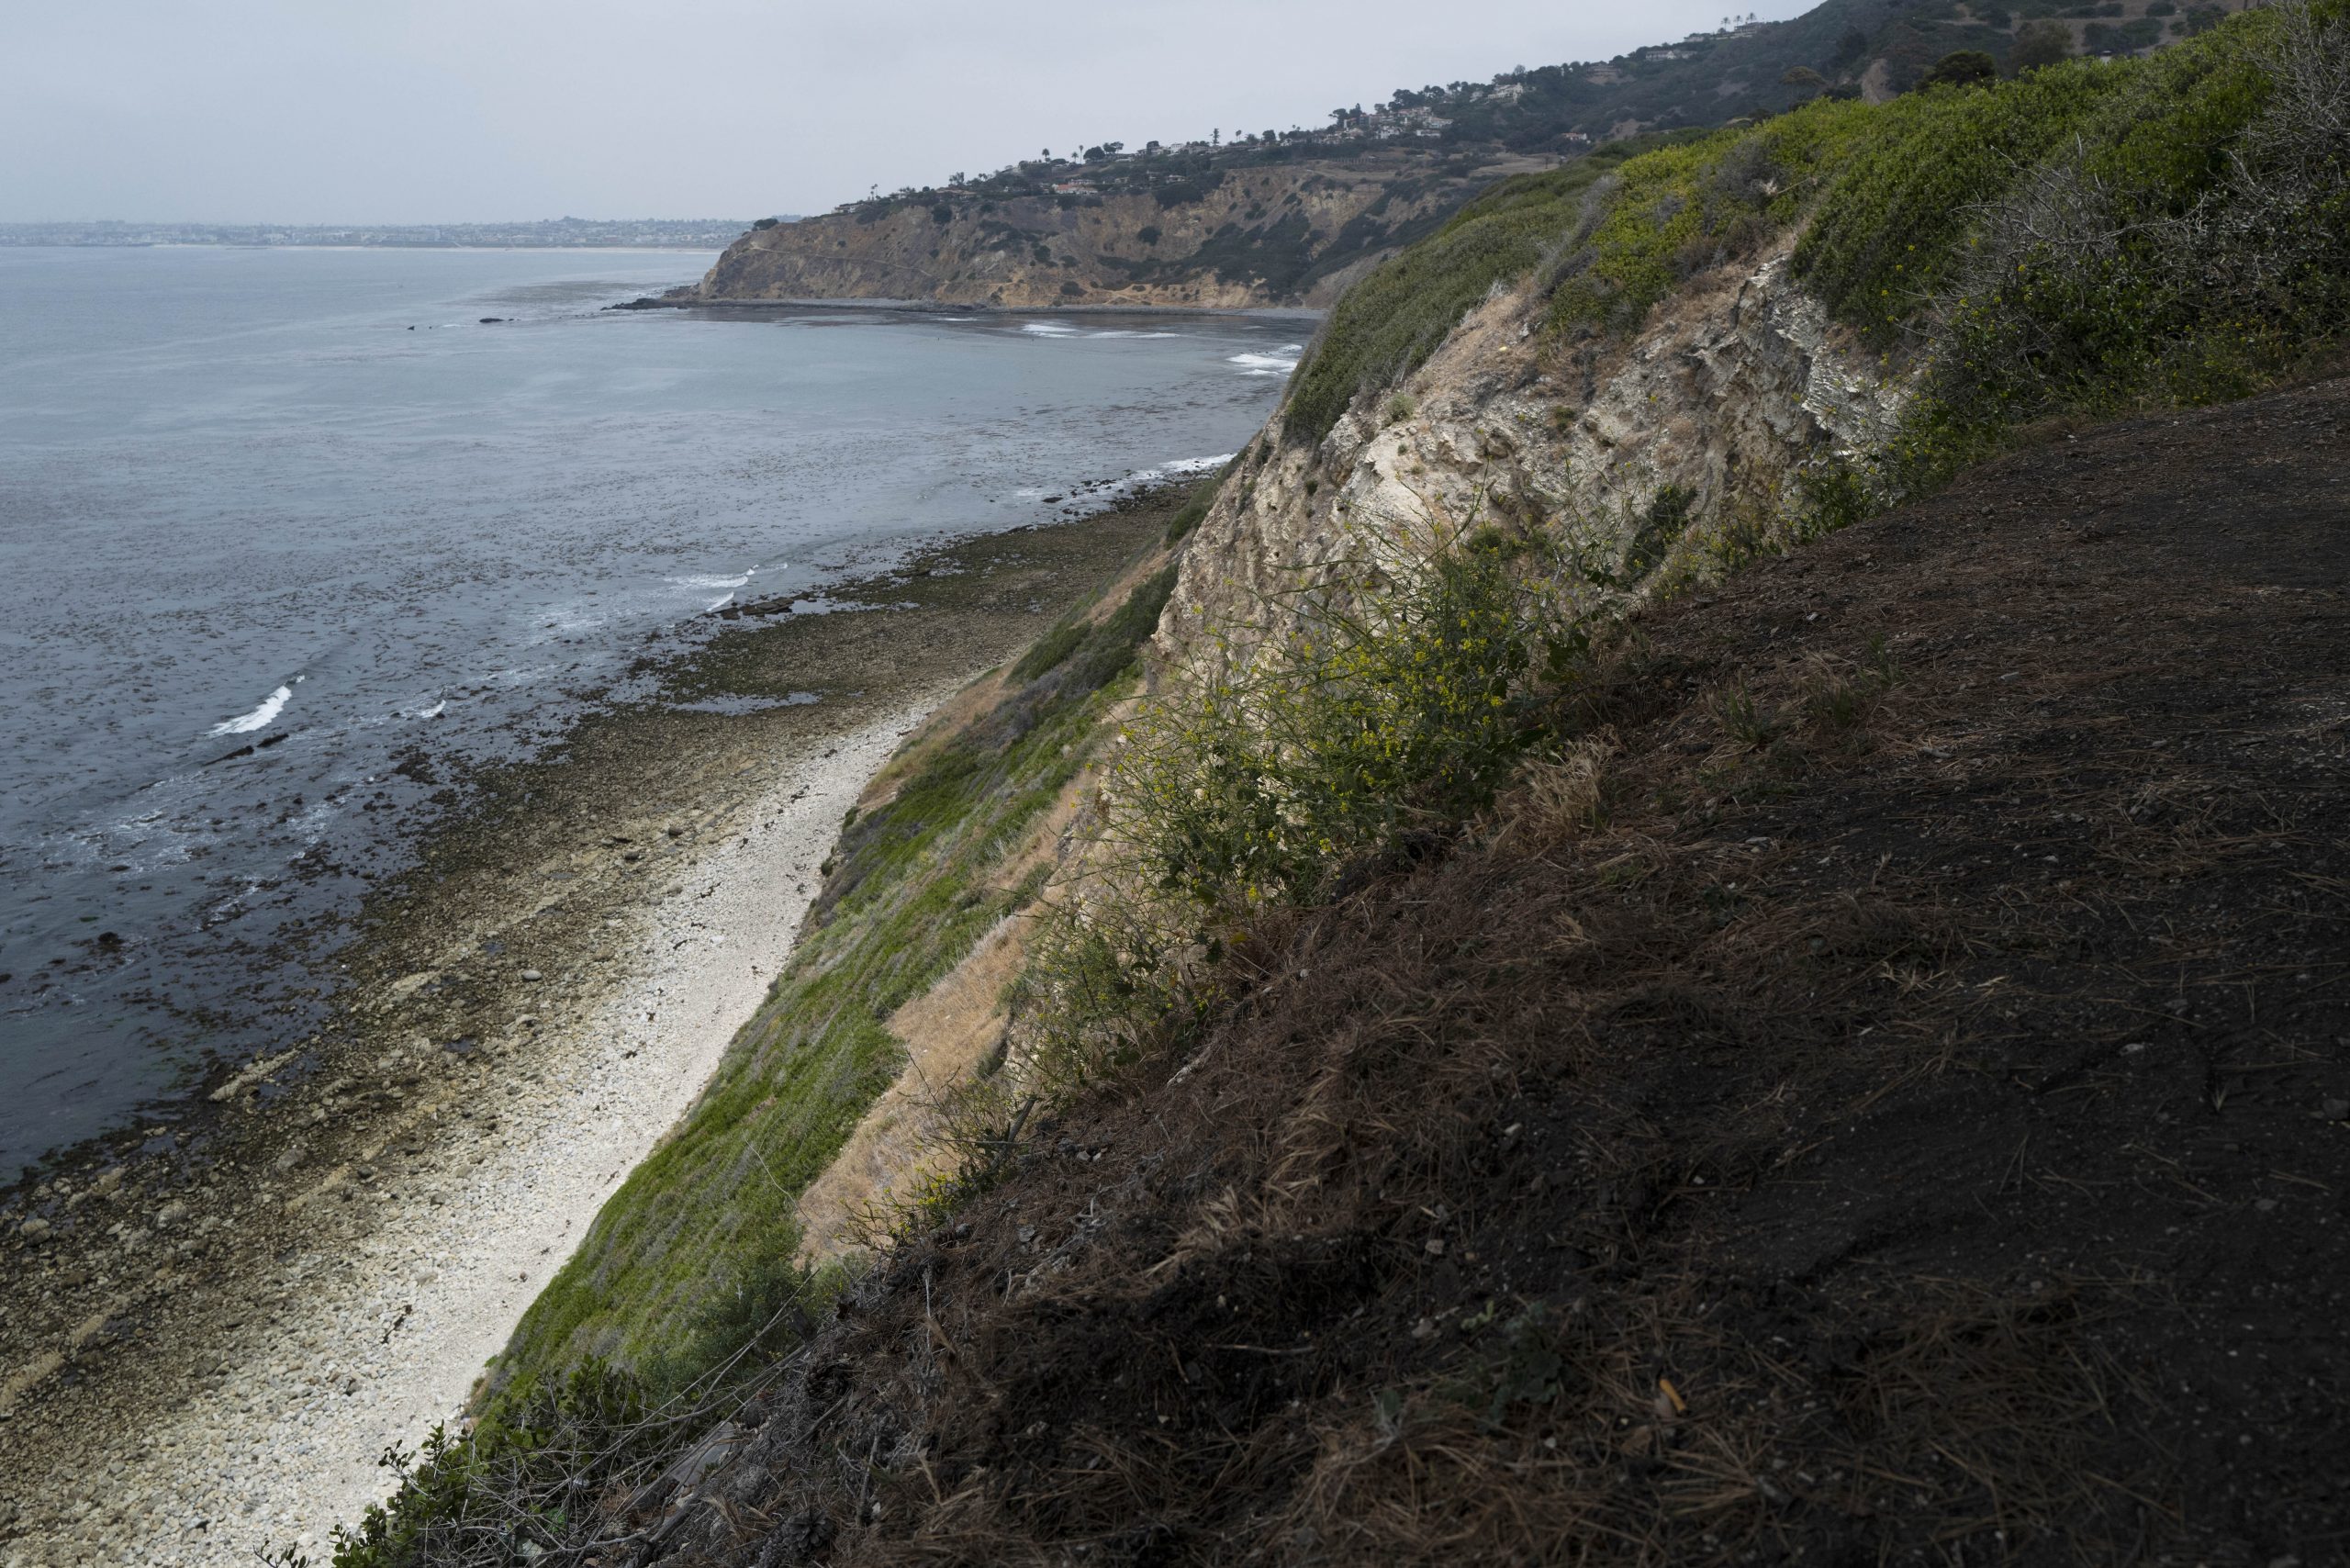 美国洛杉矶海边景点离奇坠崖事件 1死3伤